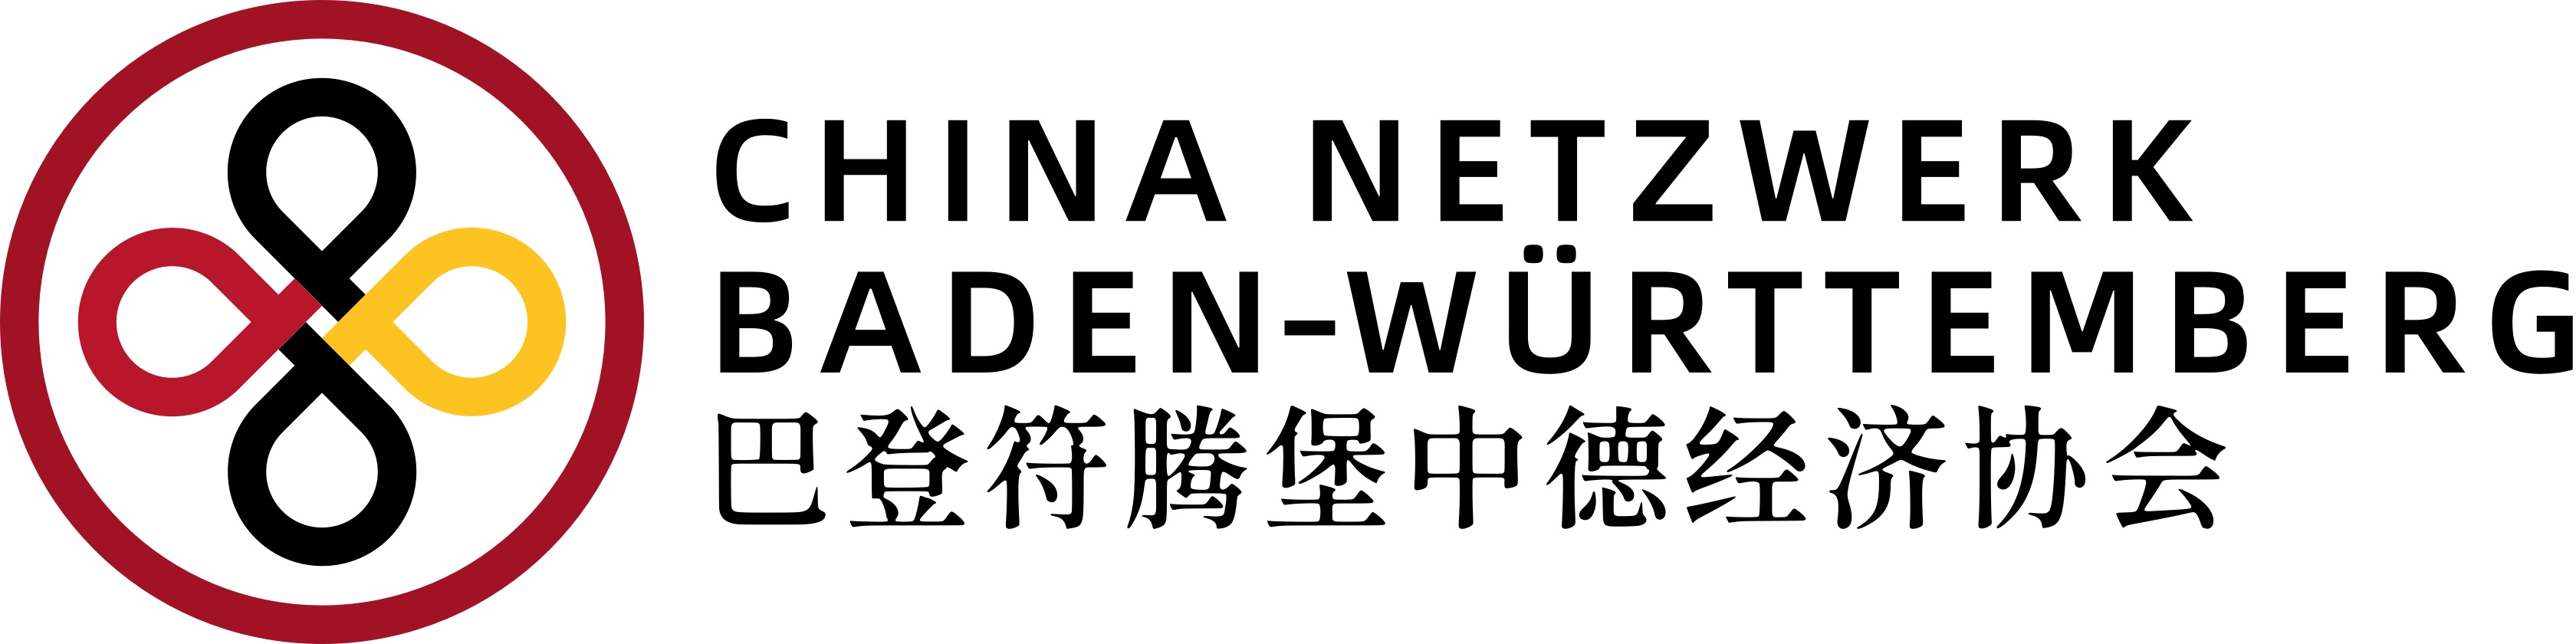 cnbw logo primary v1 2